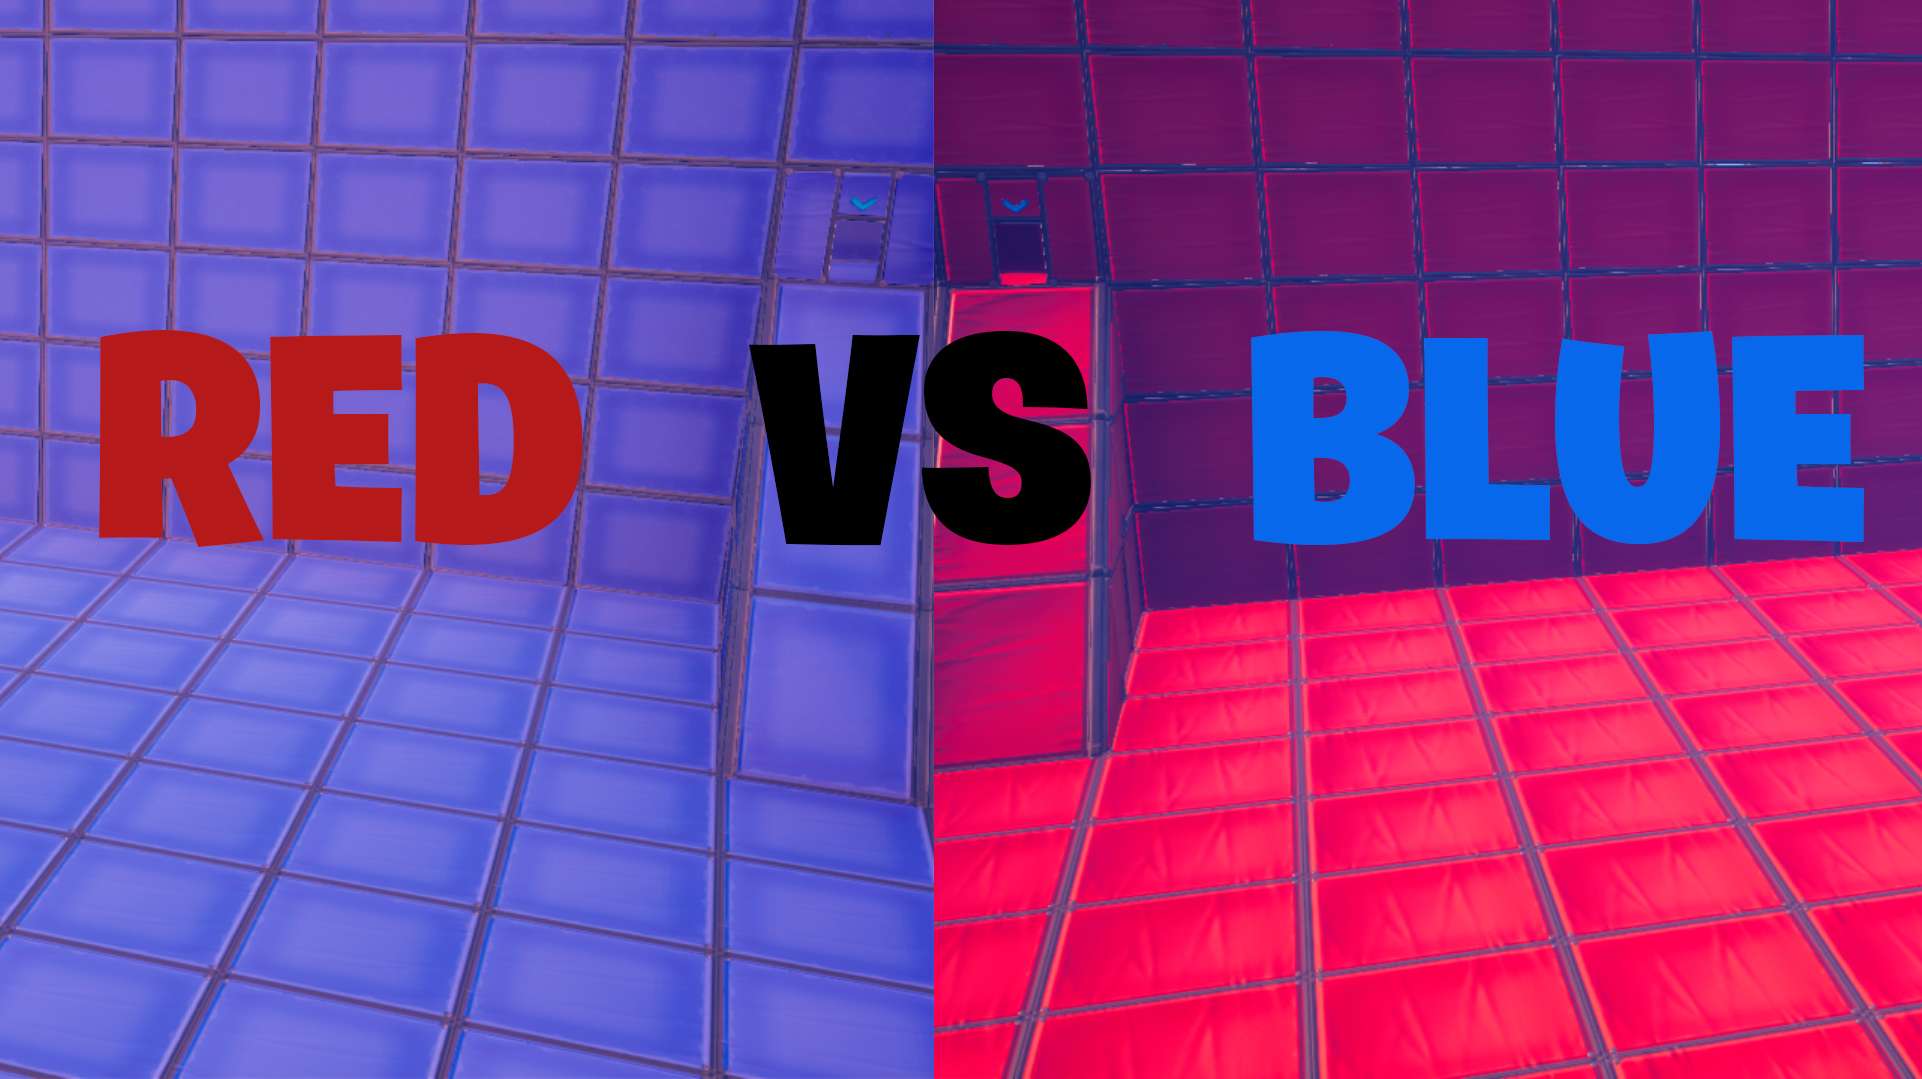 RED VS BLUE V2